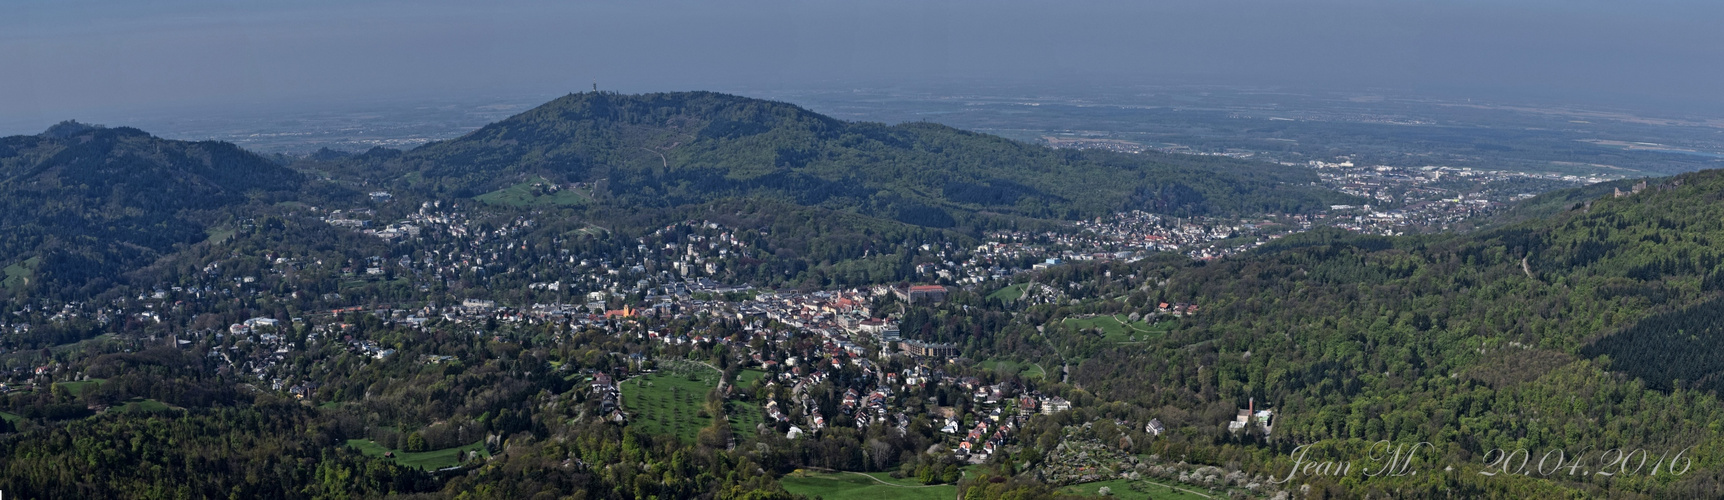 Vom Merkurturm auf Baden-Baden